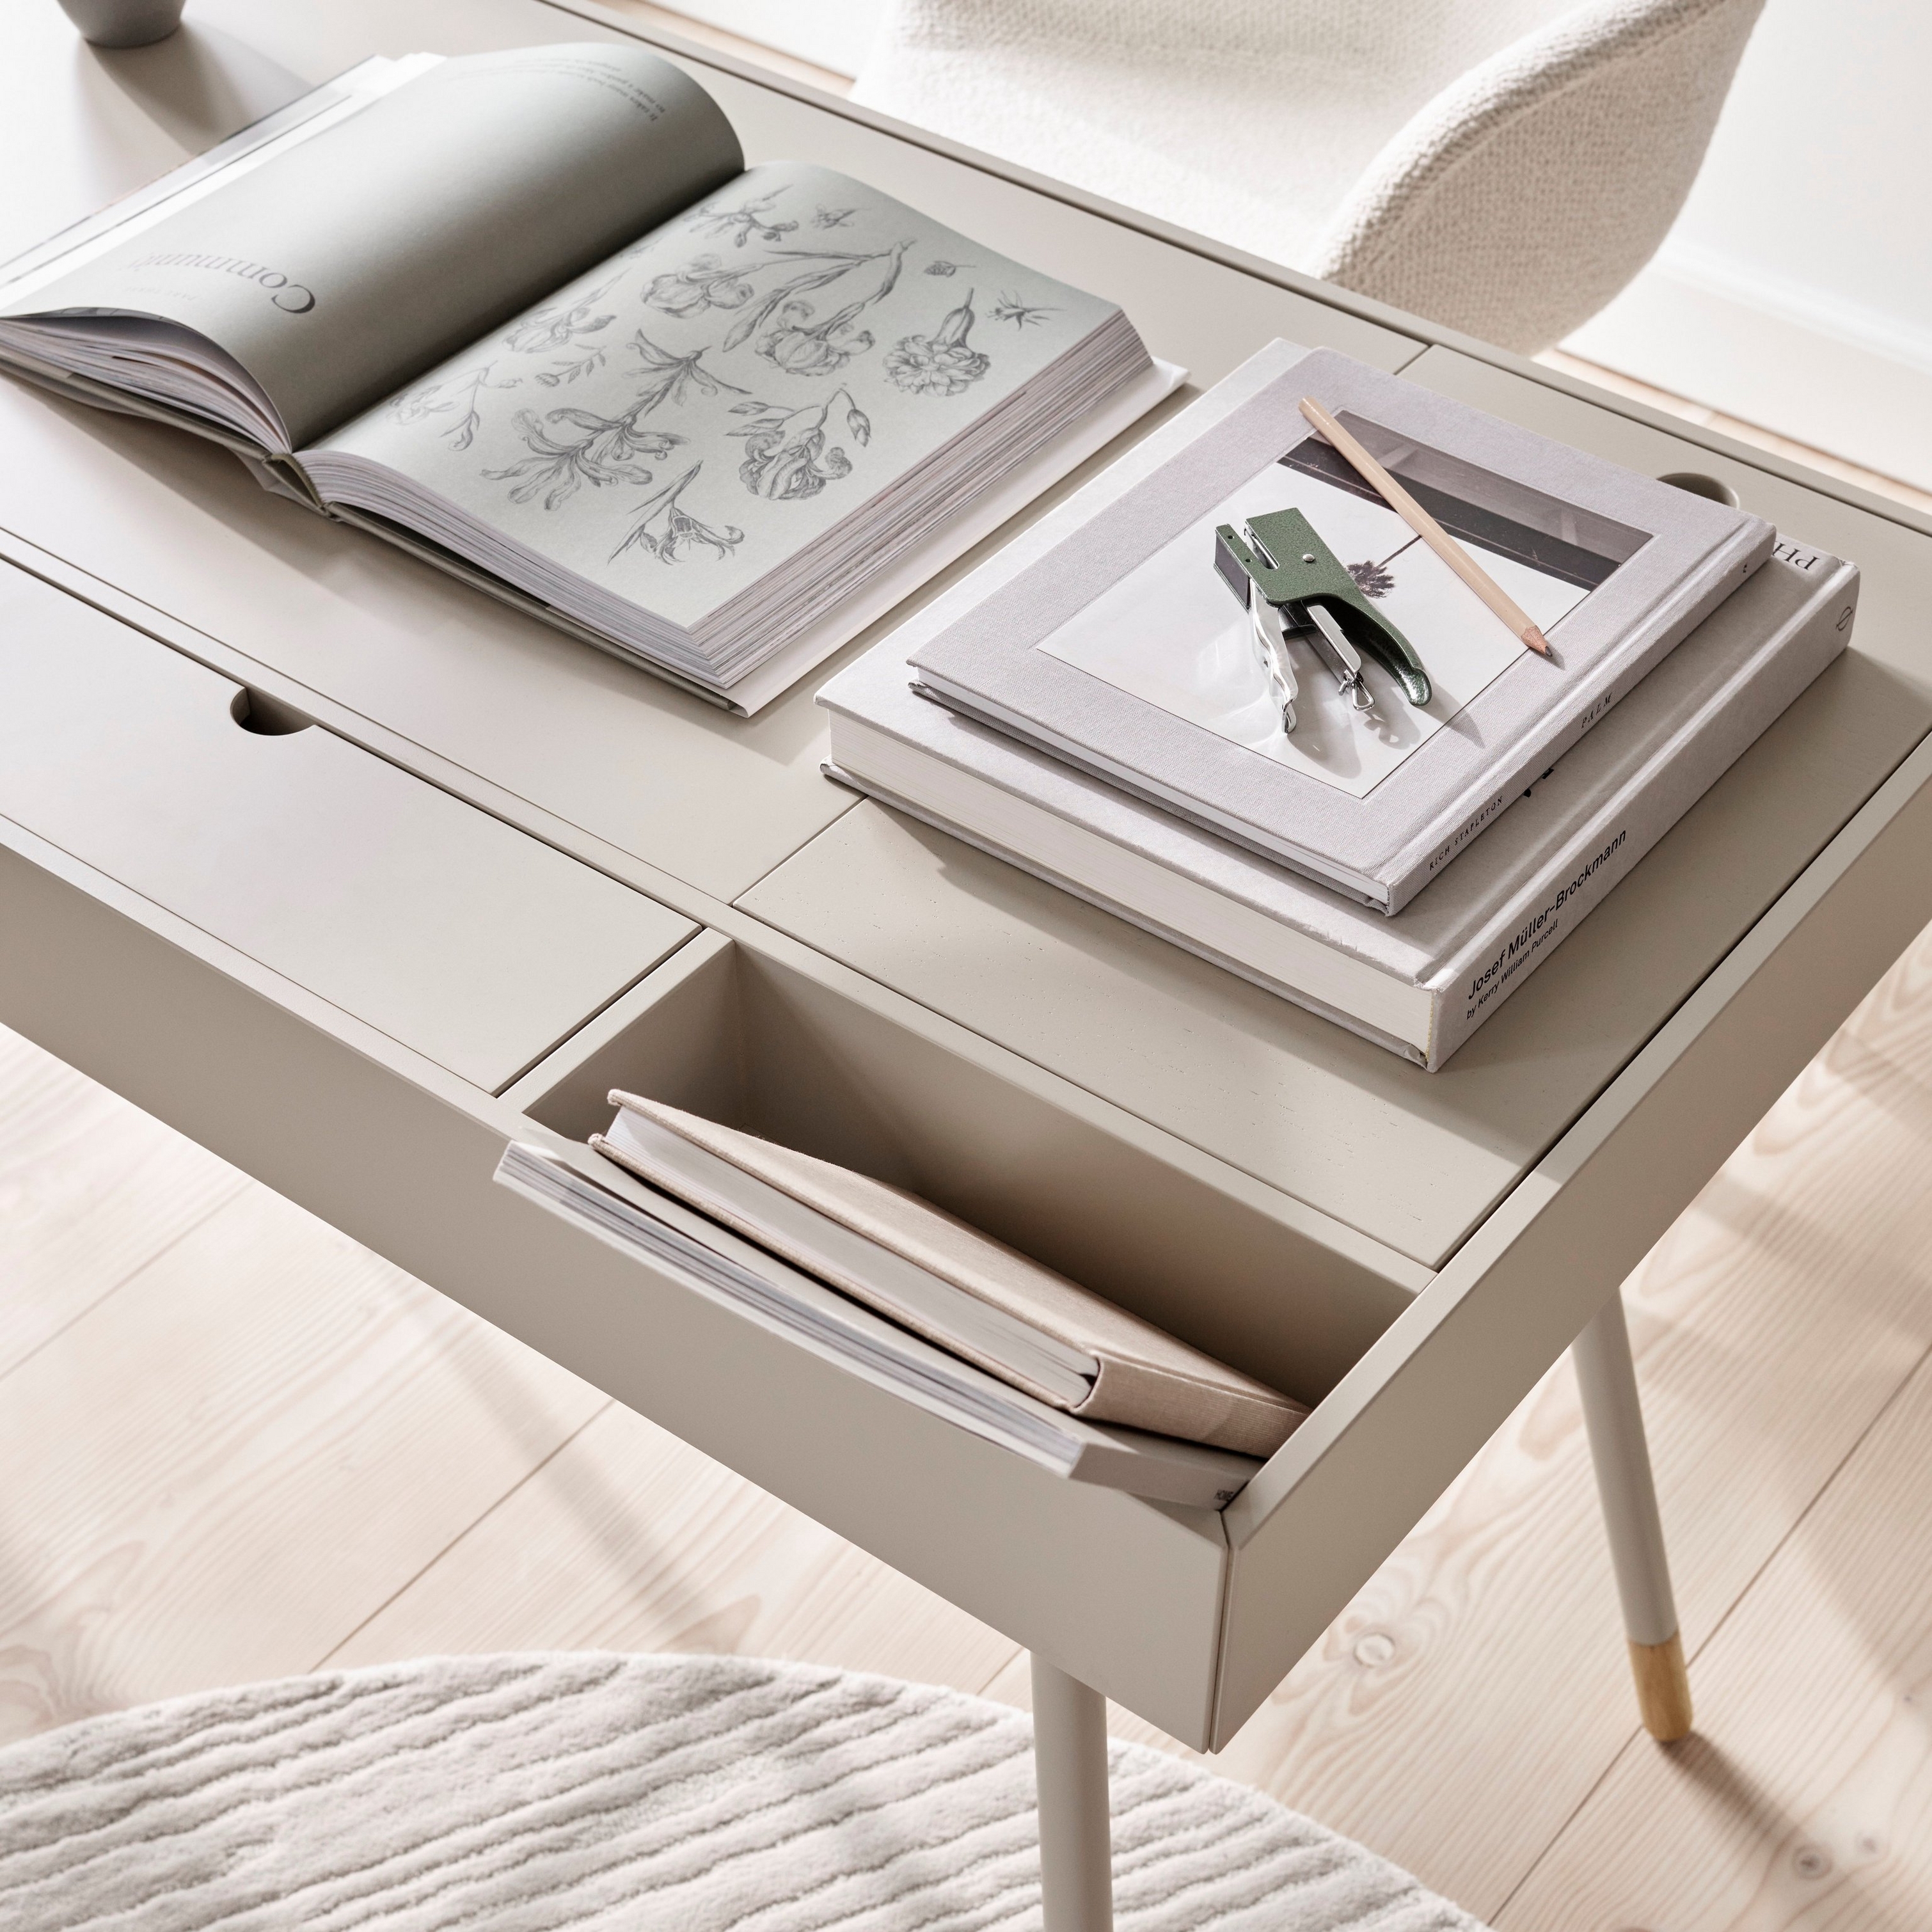 Der Cupertino Schreibtisch wunderschön kombiniert mit dem Strukturteppich in passenden Farben